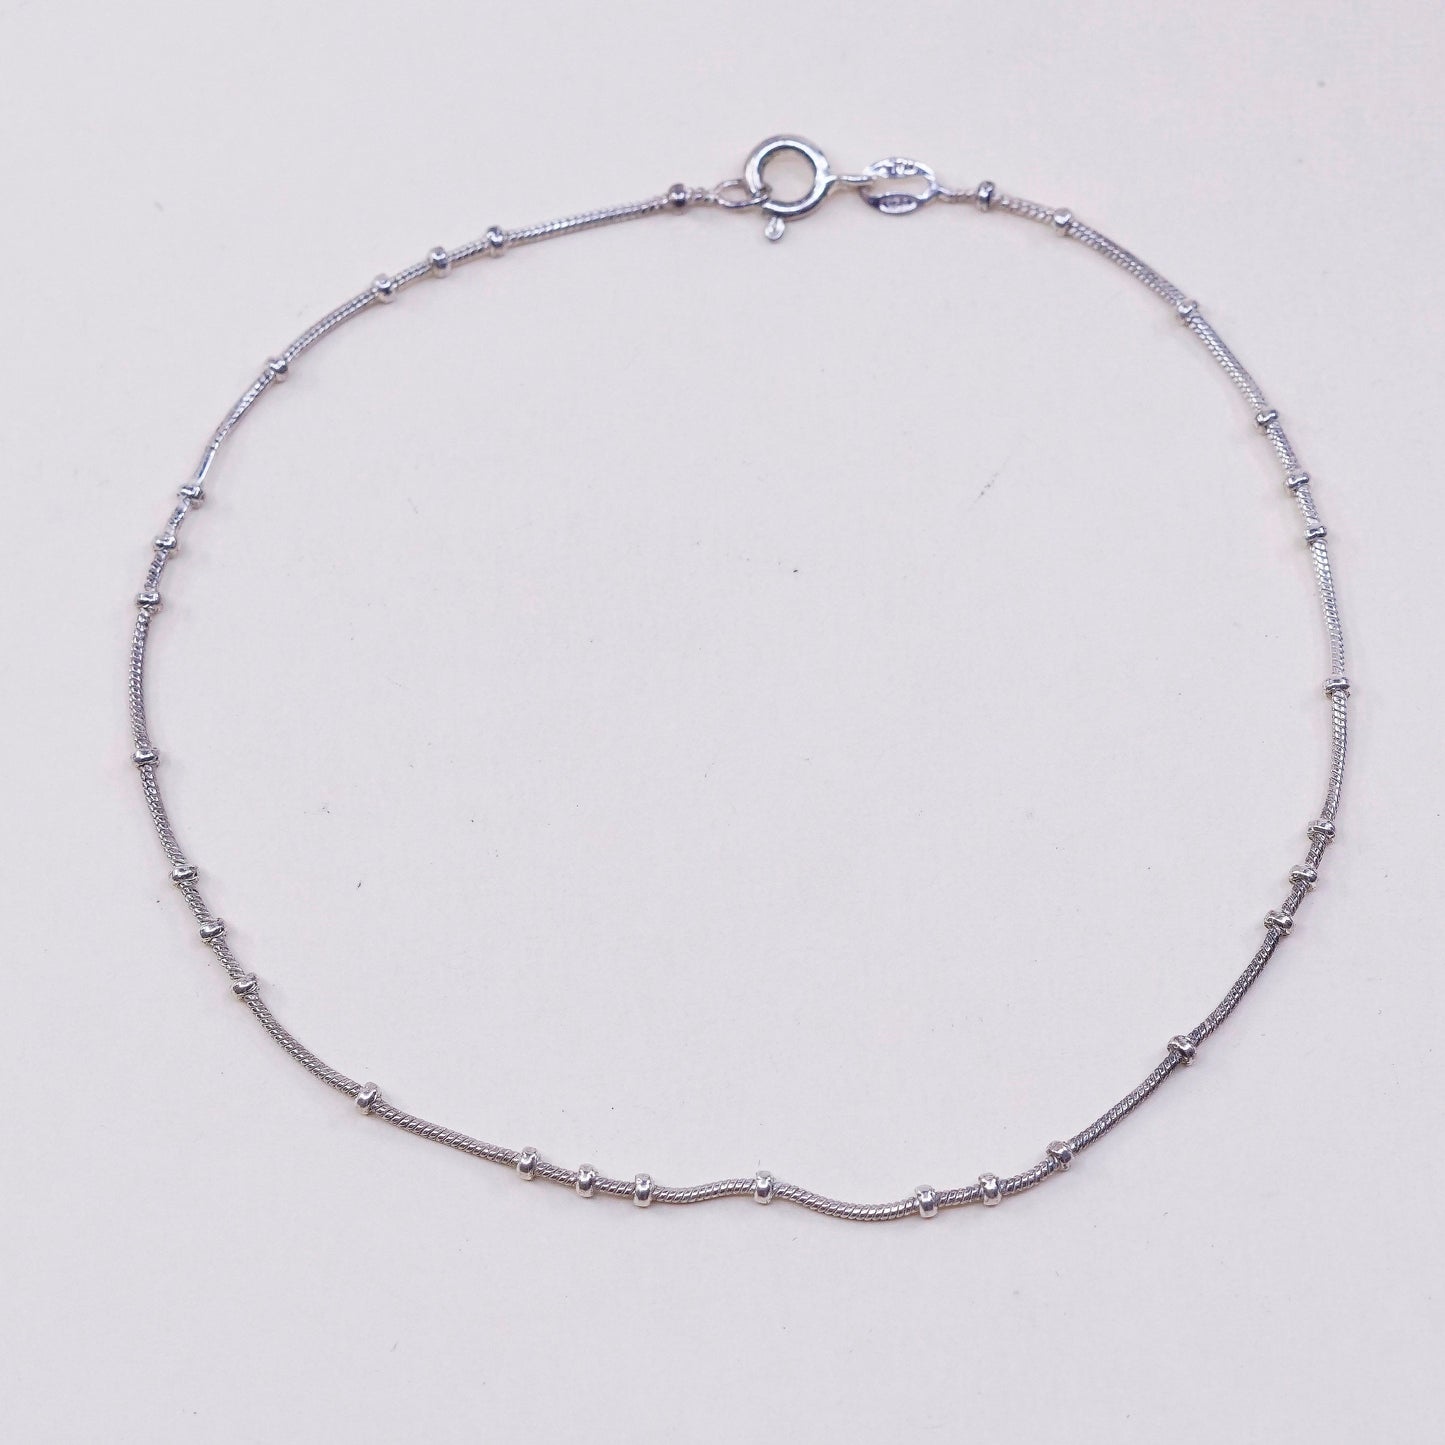 9.75”, VTG Handmade sterling silver anklet, italy 925 snake chain w/ beads